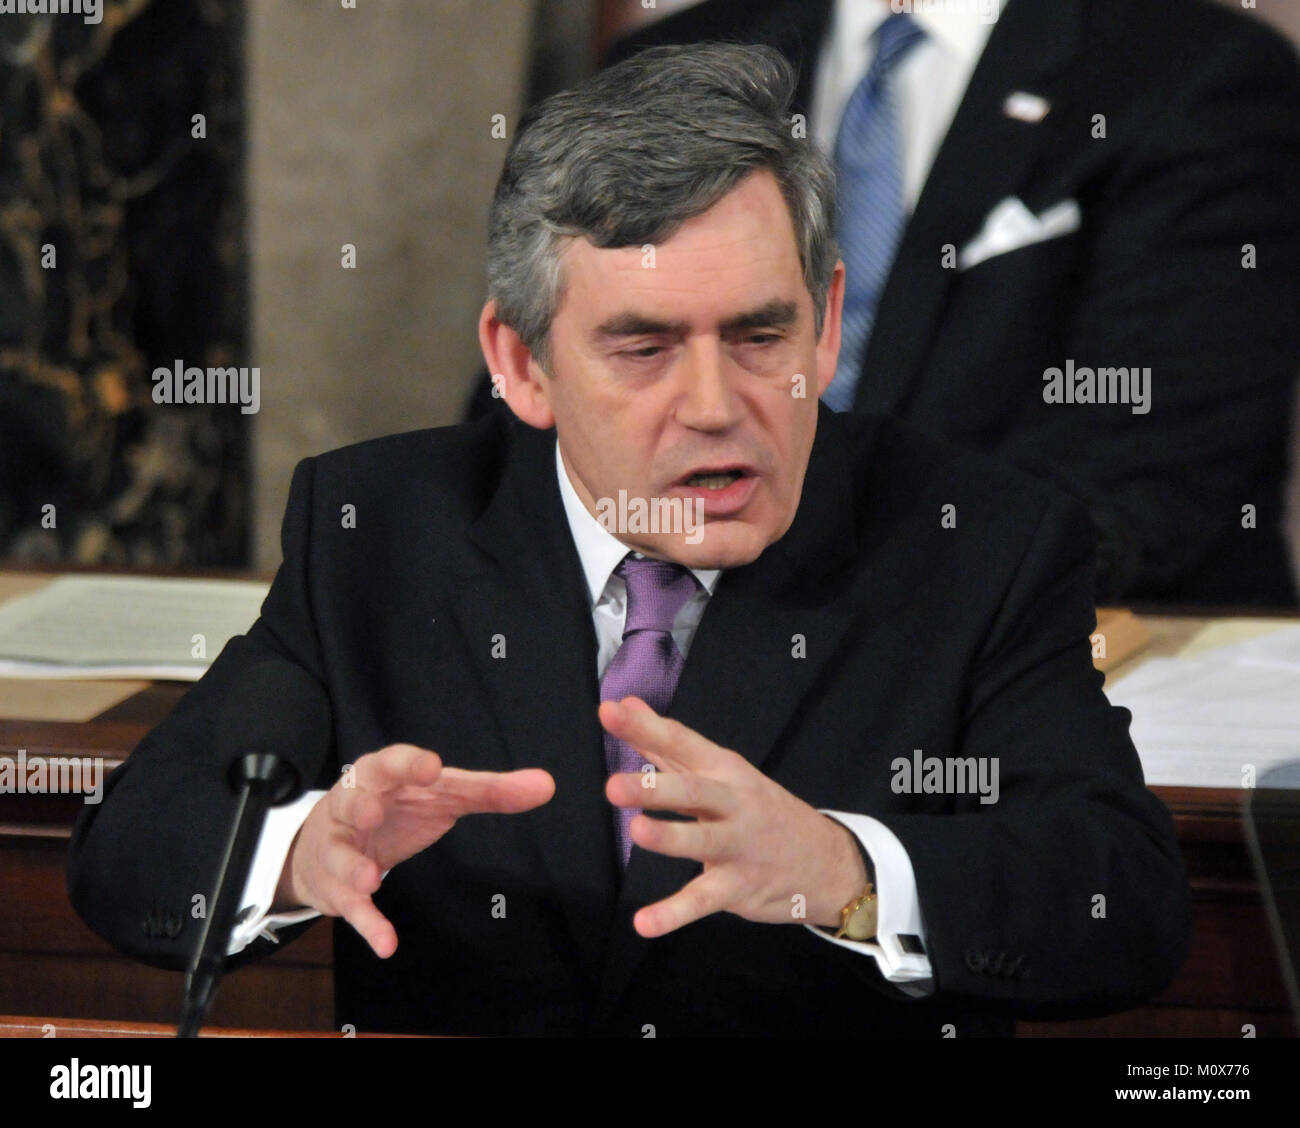 Washington, DC - 4. März 2009 - Das Recht auf Gordon Brown, M.P., Premierminister des Vereinigten Königreichs, Adressen einer gemeinsamen Sitzung des Kongresses der Vereinigten Staaten im US-Kapitol in Washington, D.C. am Mittwoch, 4. März 2009. Quelle: Ron Sachs/CNP/MediaPunch Stockfoto